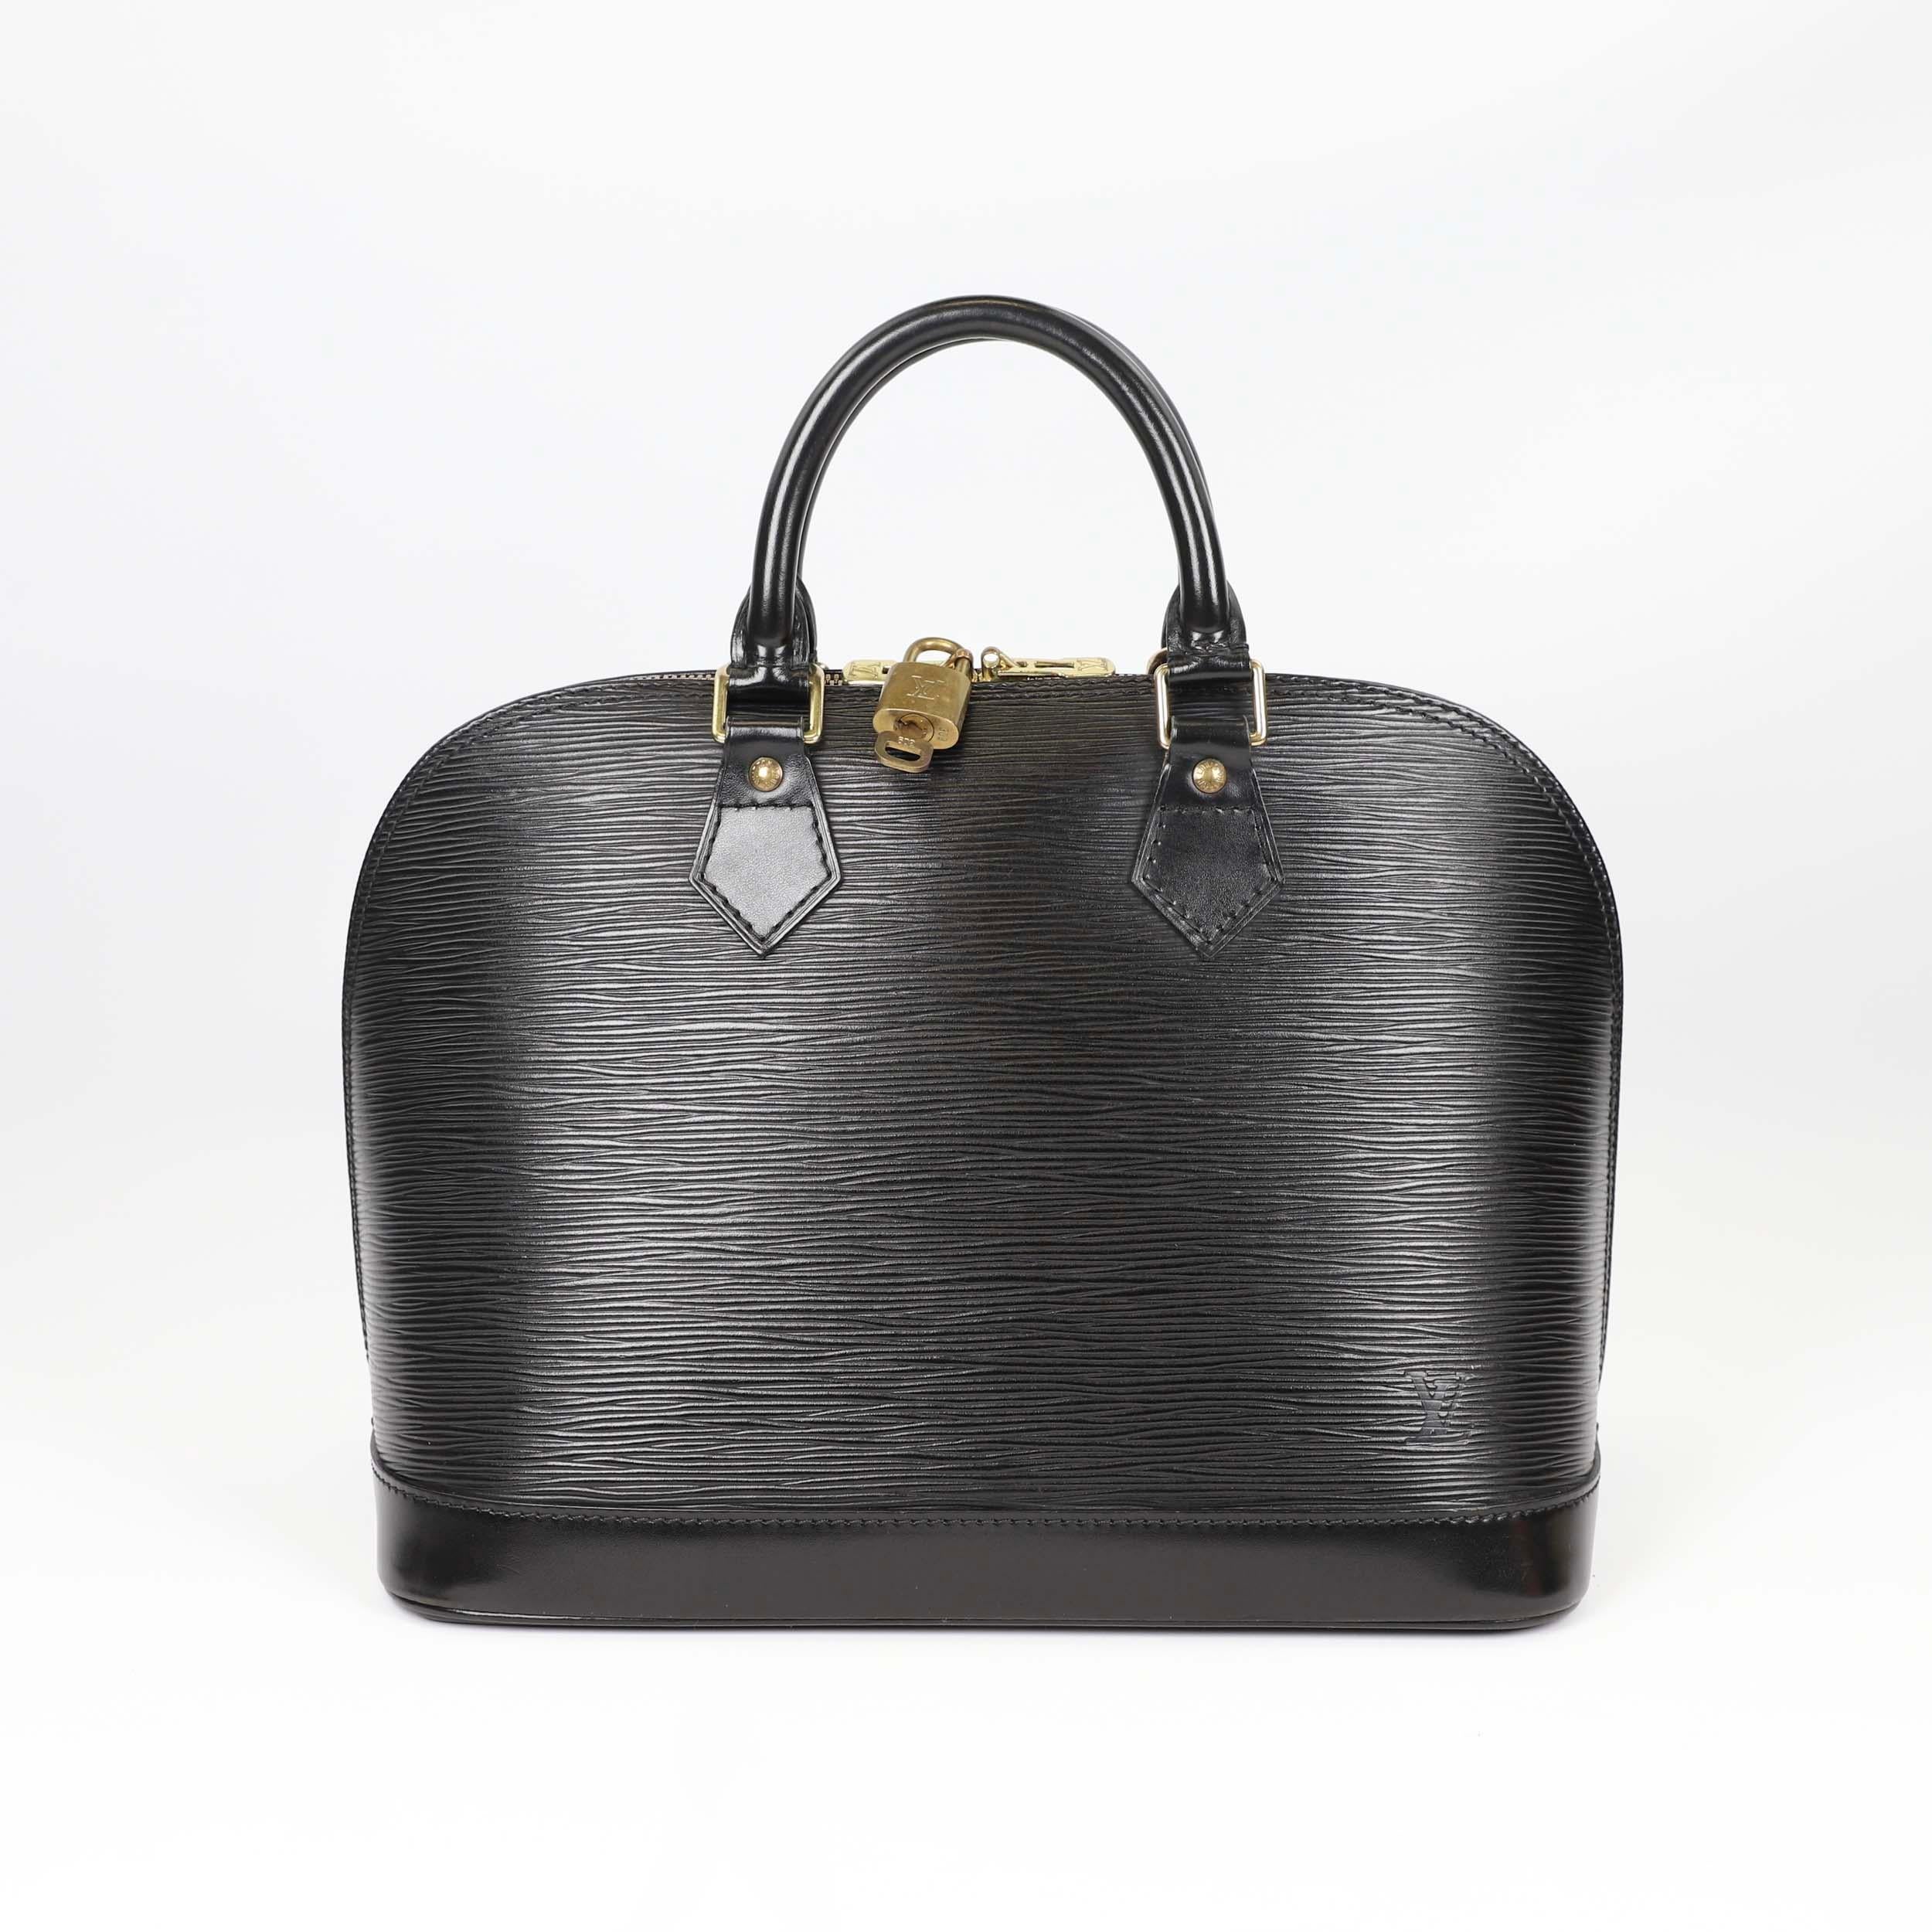 Louis Vuitton Alma leather handbag 3